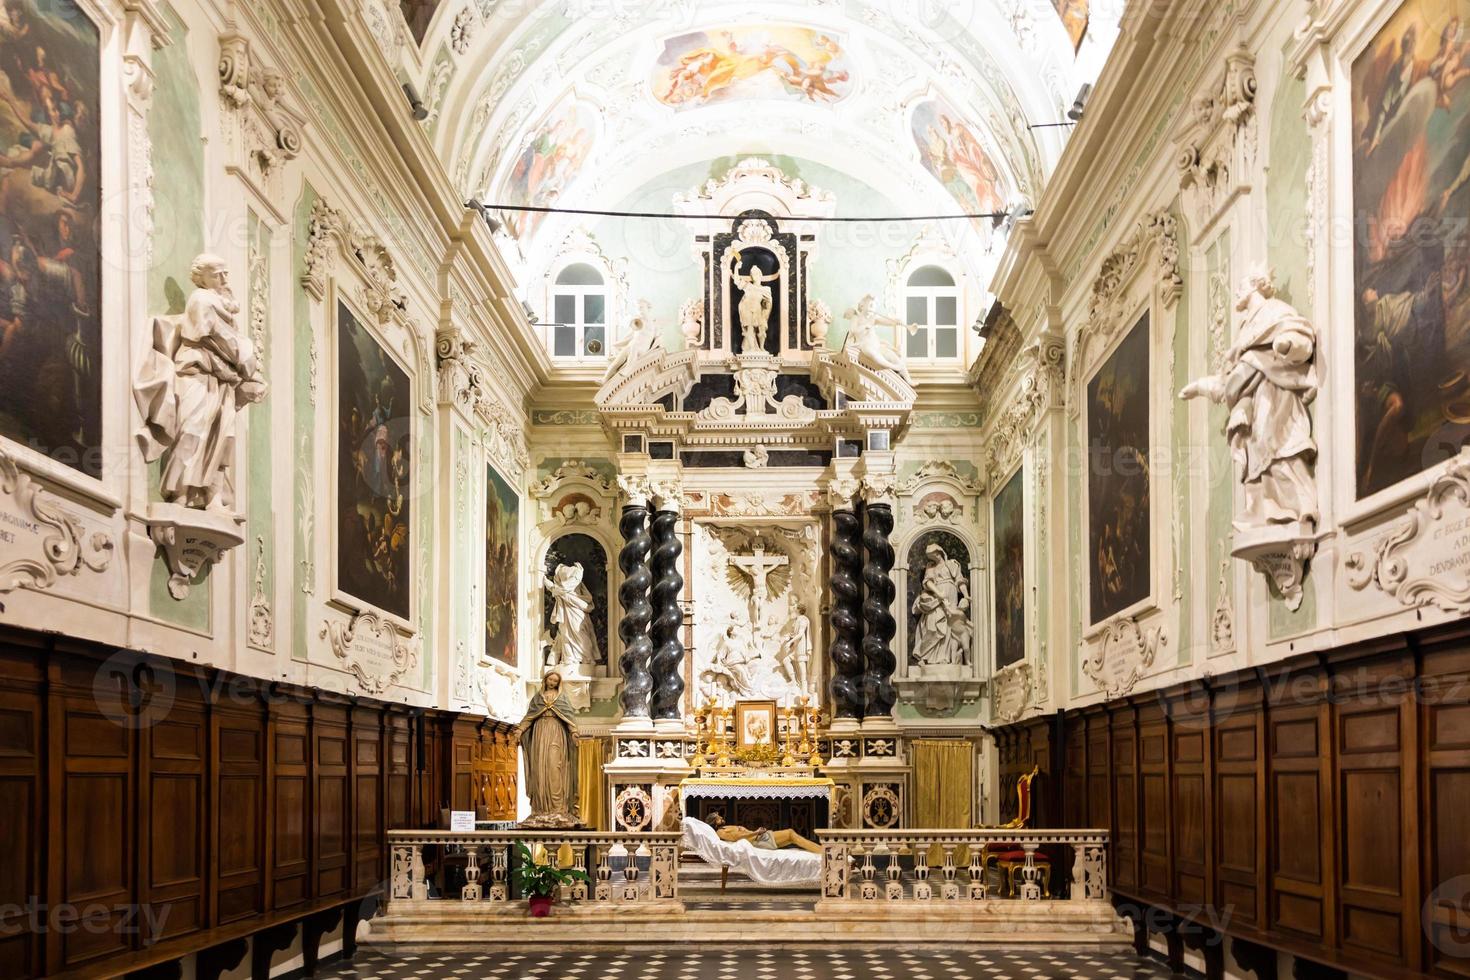 Ventimiglia, Italy - the baroque church interior of Oratorio dei Neri with Jesus Christ statue photo